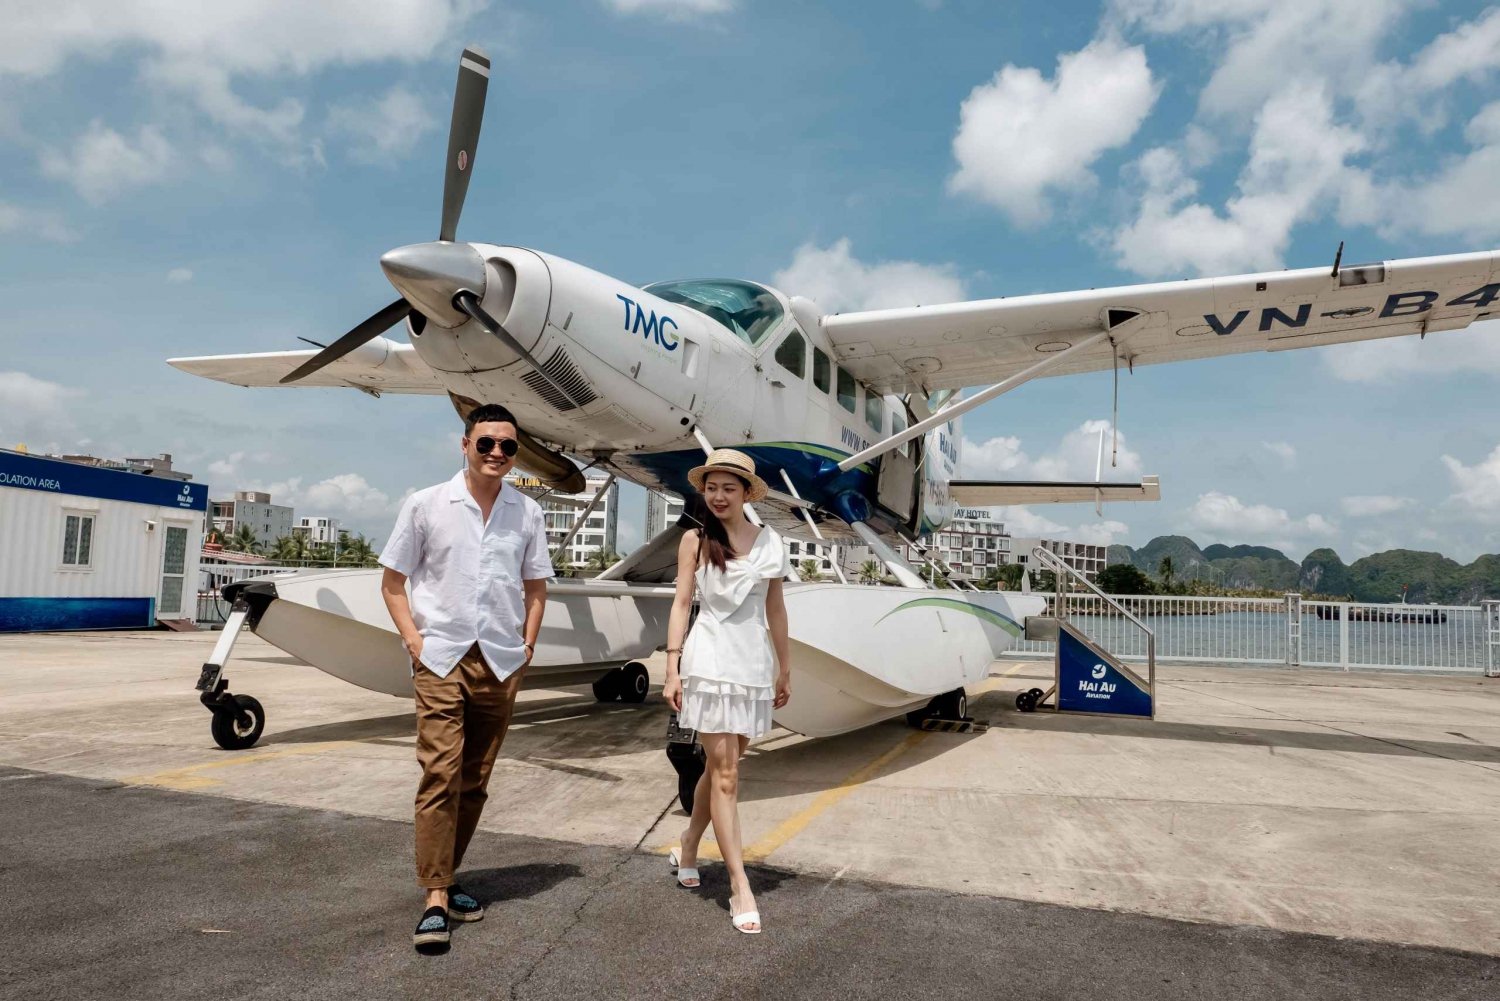 Ha Long Bay Scenic Seaplane Tour -25 minutter fra SKY